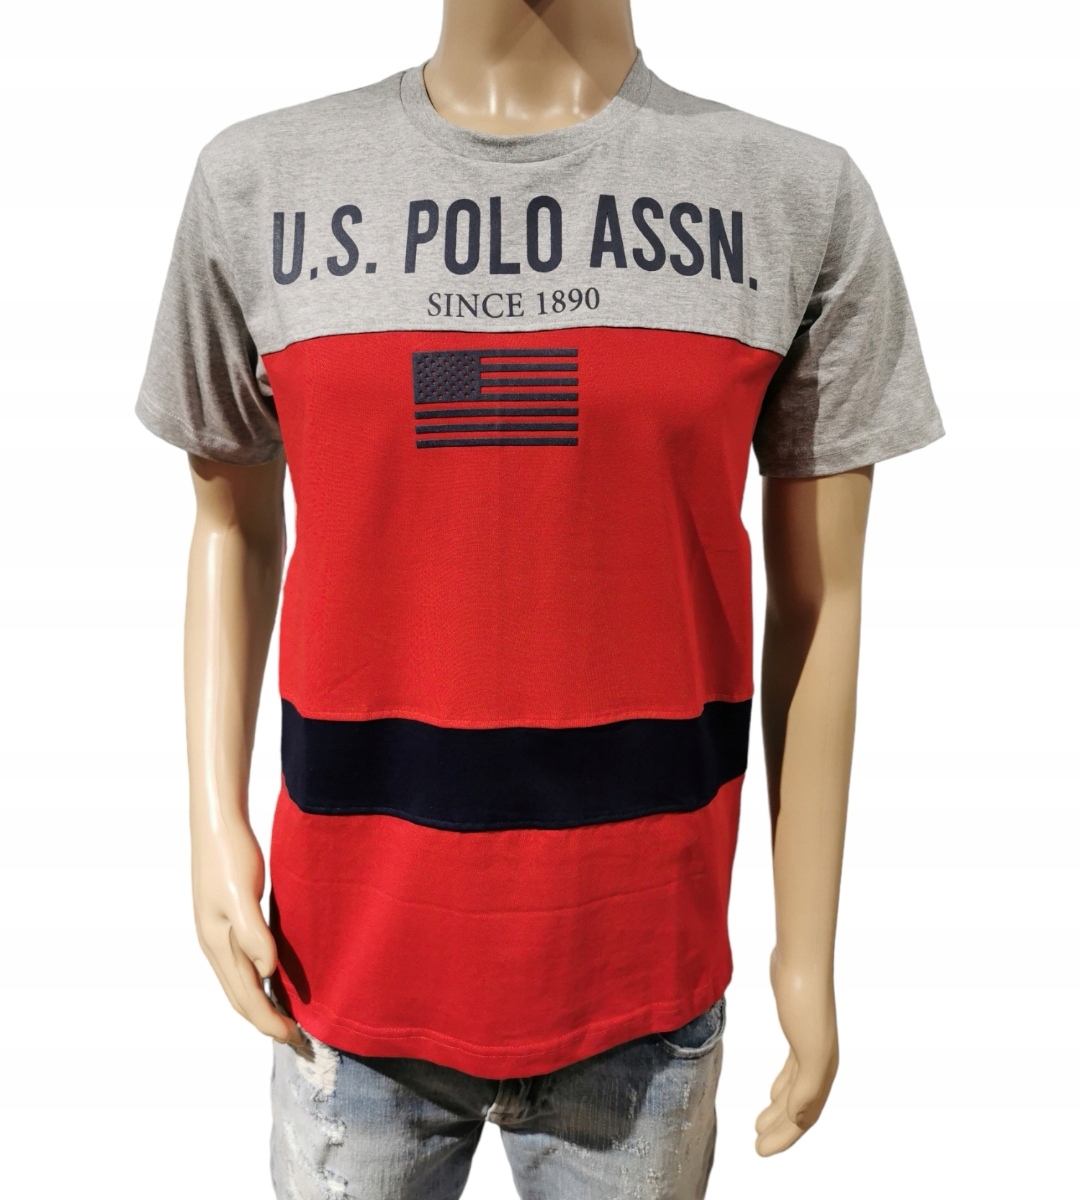 U.S. POLO ASSN bavlnené tričko šedé logo M